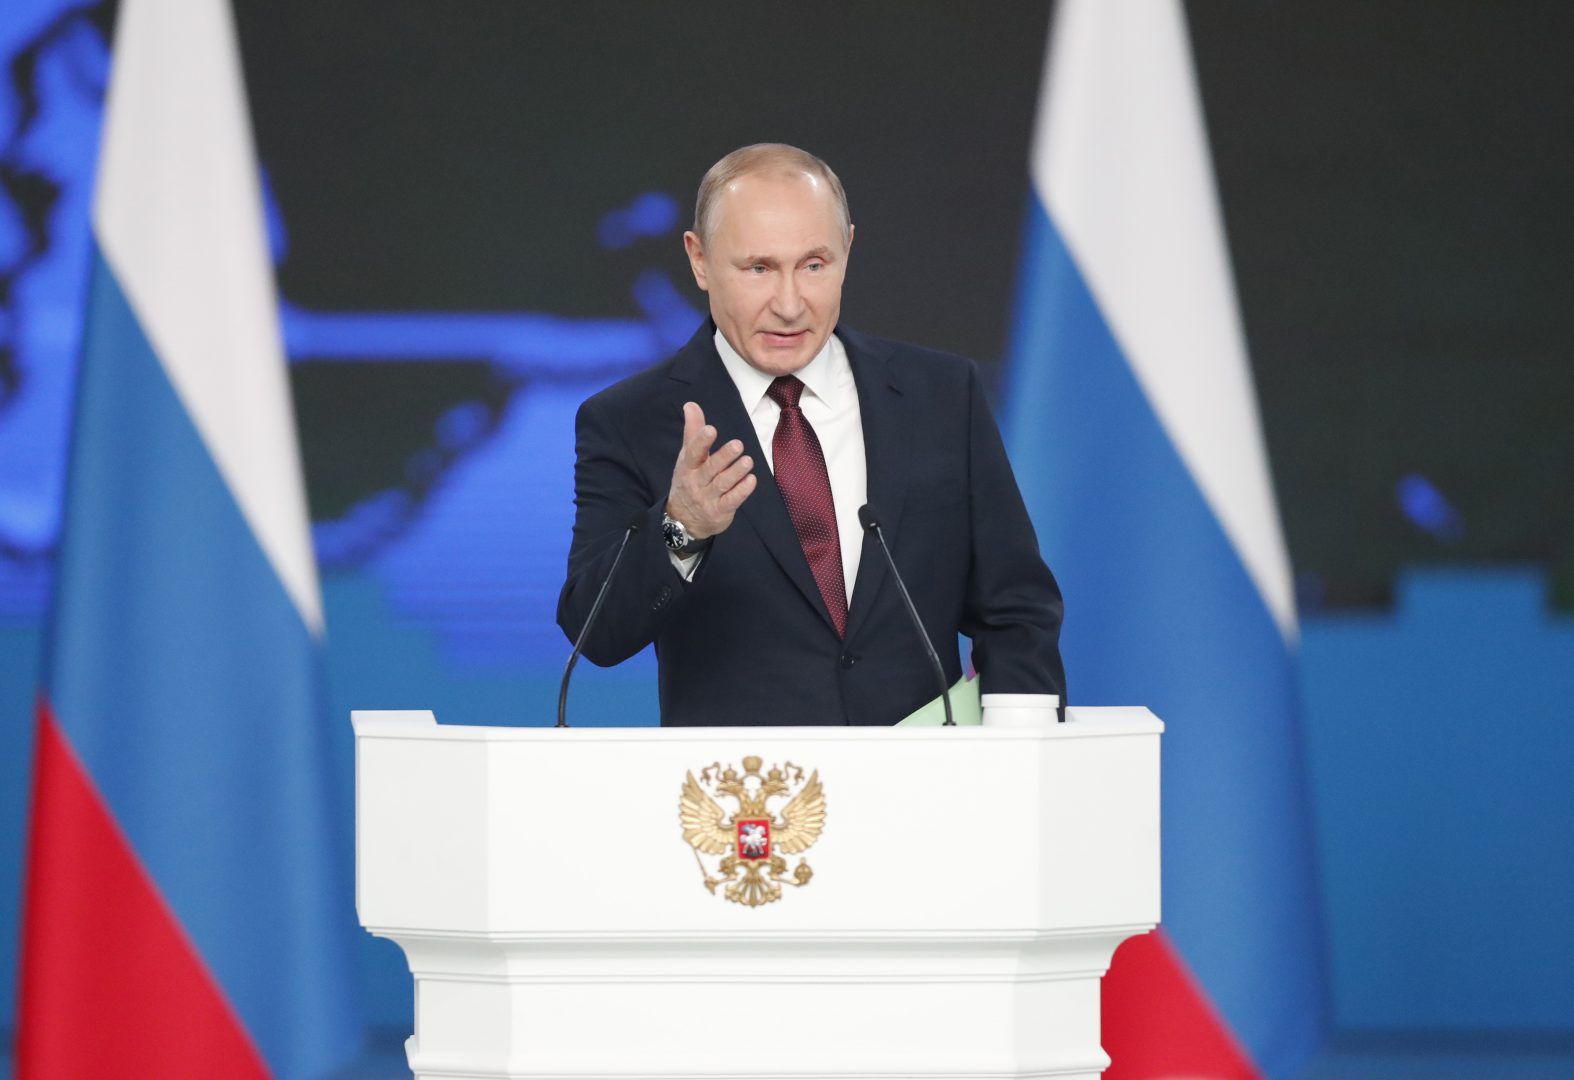 20 февраля 2019 года. Москва. Президент России Владимир Путин во время обращения к Федеральному собранию. Фото: EPA